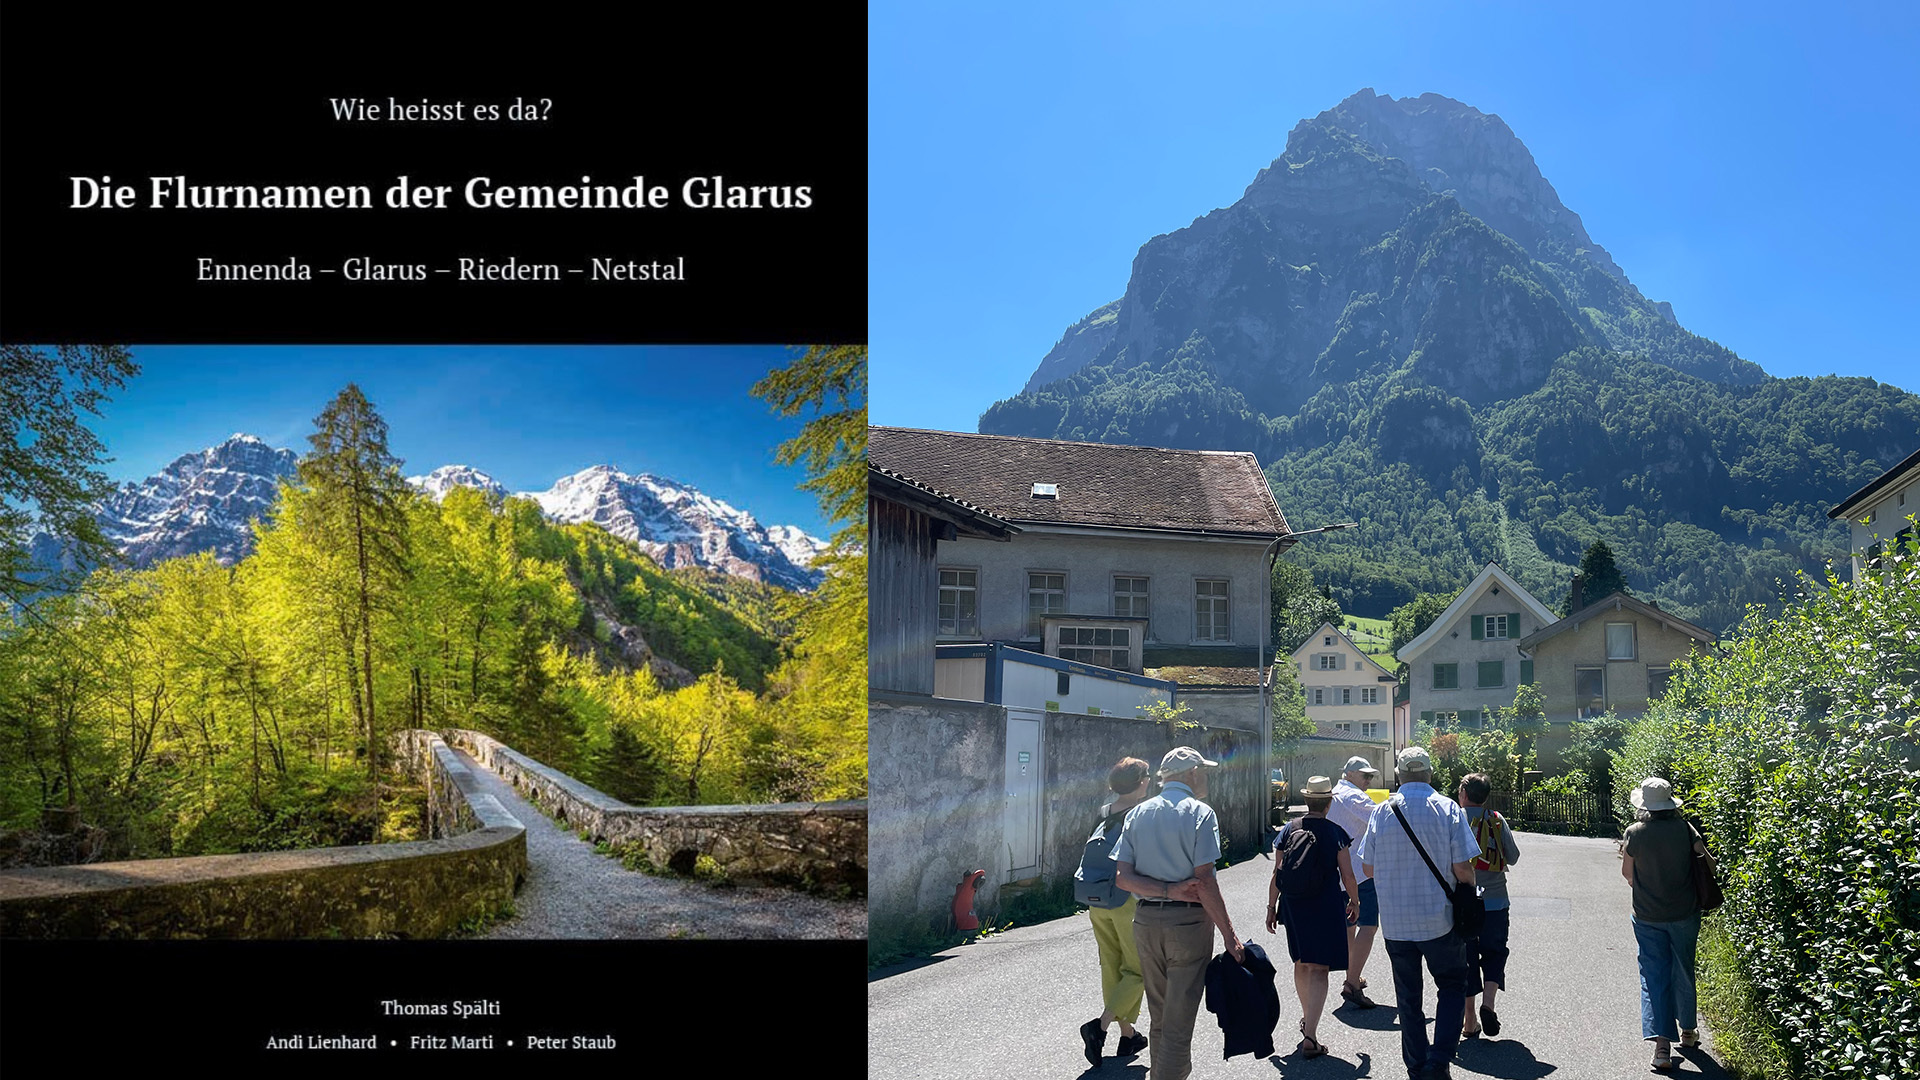 Das Bild zeigt links den Buchumschlag von "Die Flurnamen der Gemeinde Glarus" und rechts die Mitglieder des Chapters am Spaziergang durch Glarus bei wunderbarem Wetter.